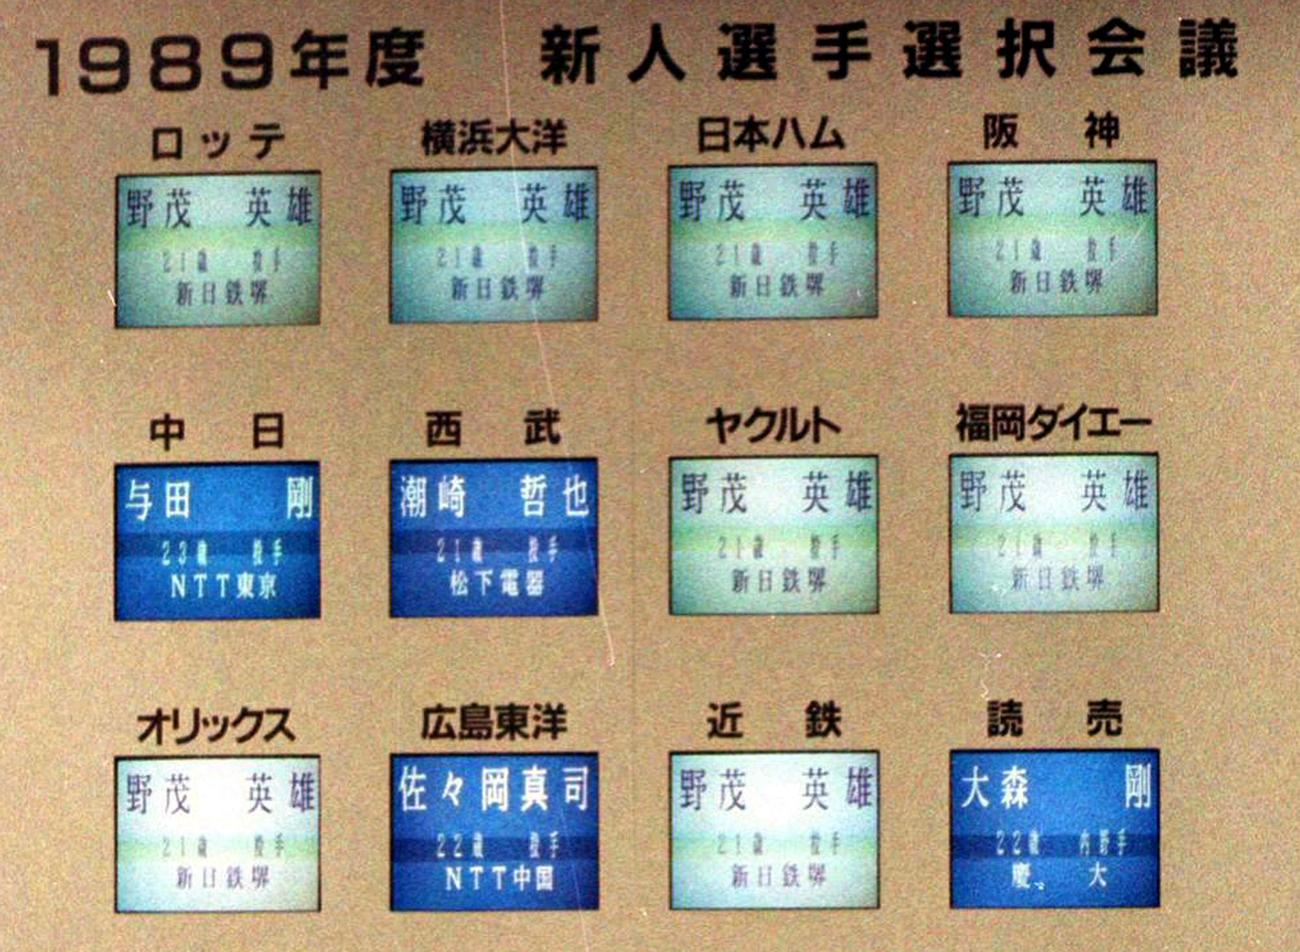 1989年11月26日、ドラフト会議で8球団が野茂英雄を1位指名した